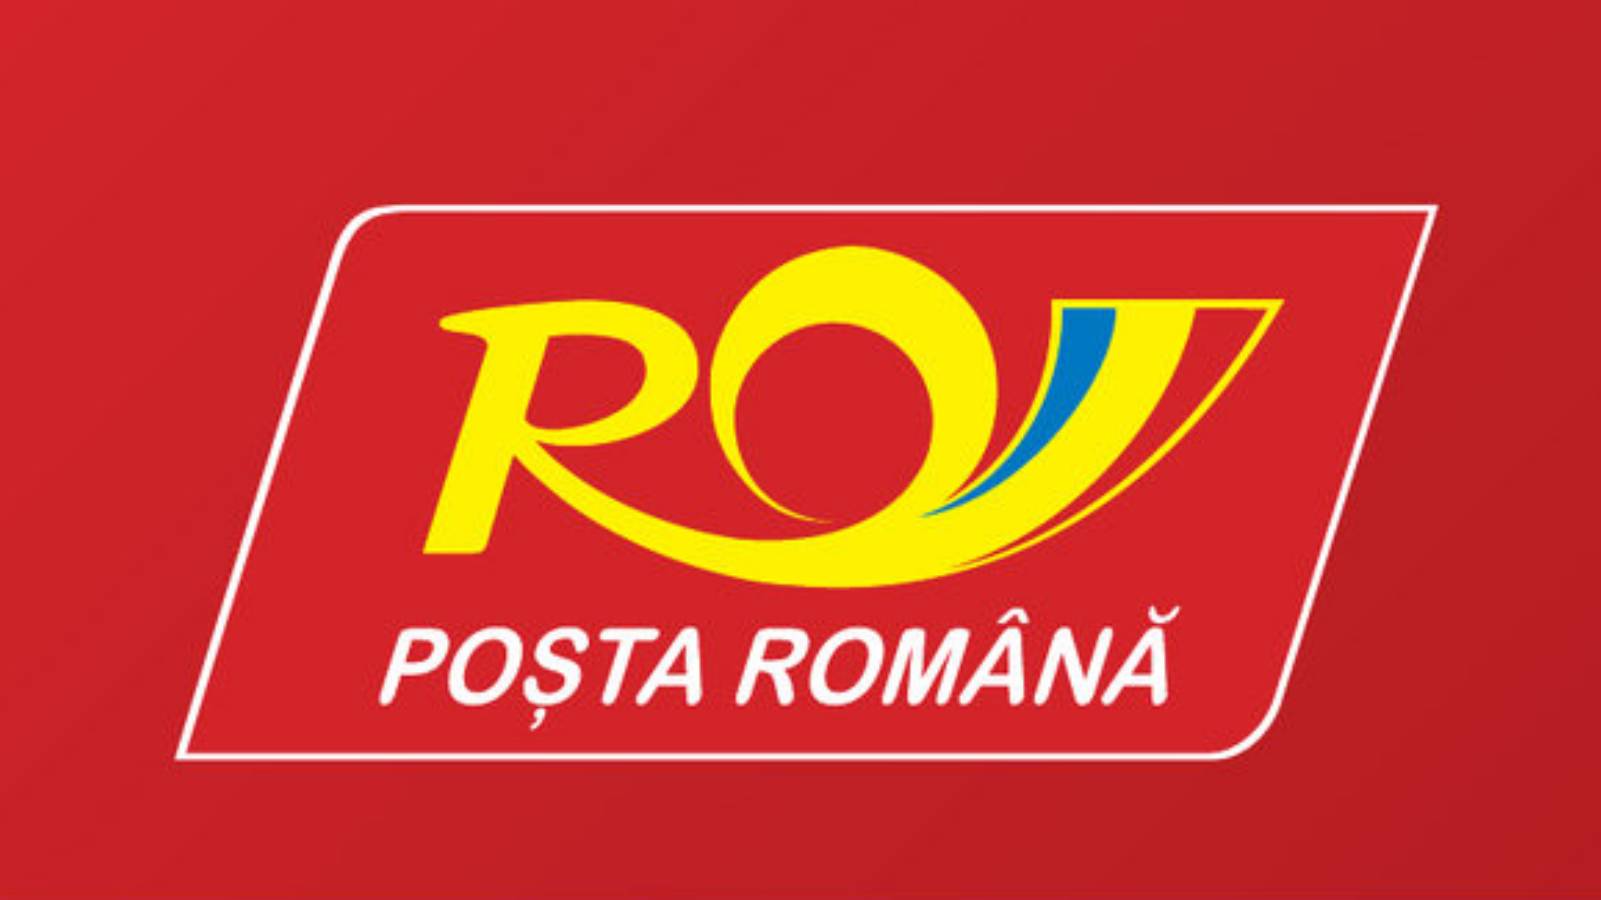 Budskapet från den rumänska Post Rovinia